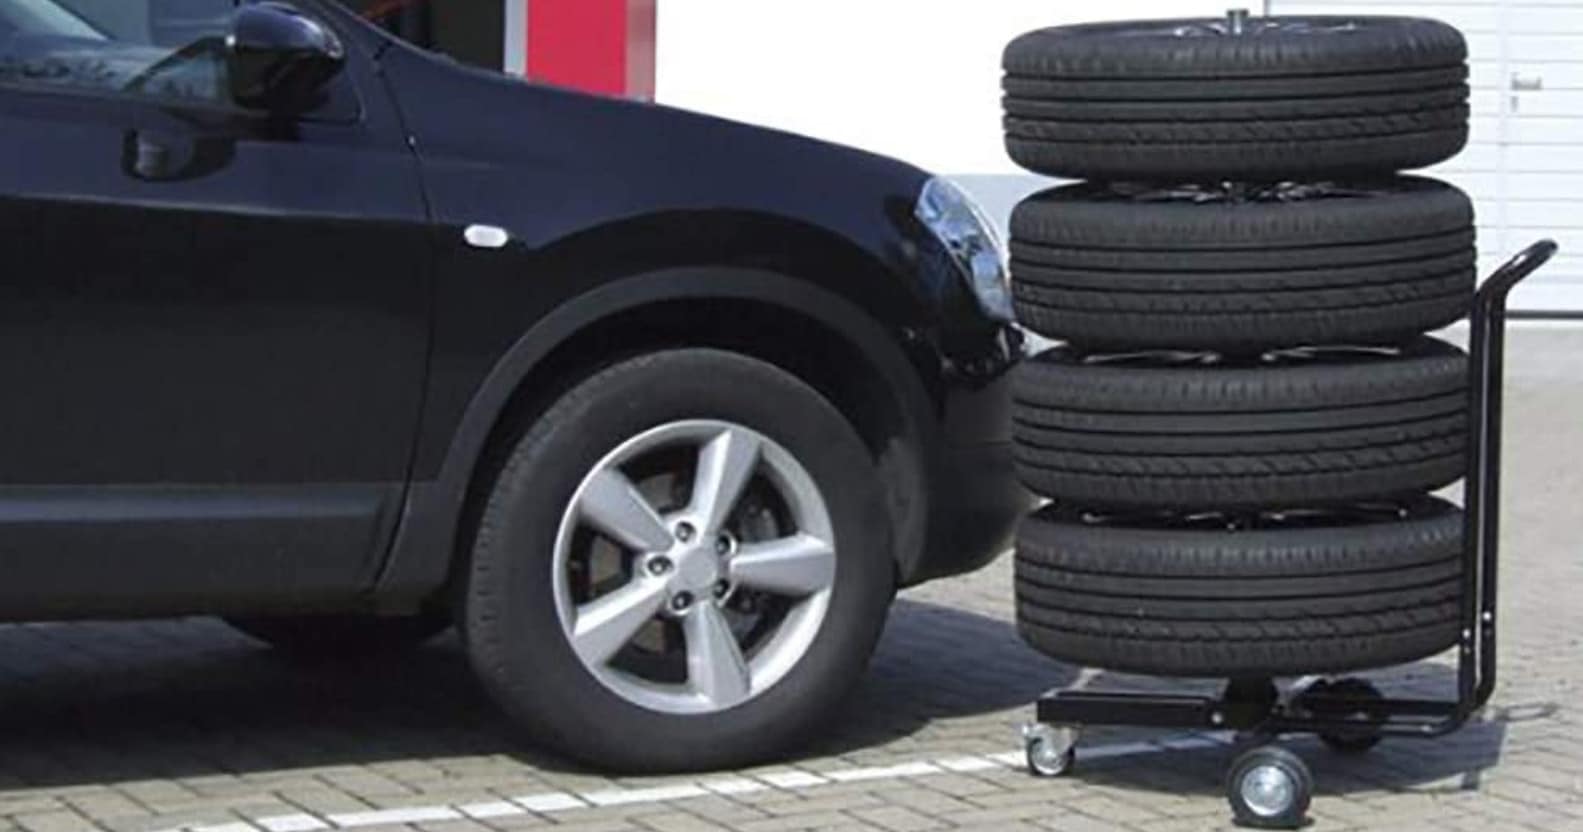 Comparatif pour choisir le meilleur support de rangement pour pneu